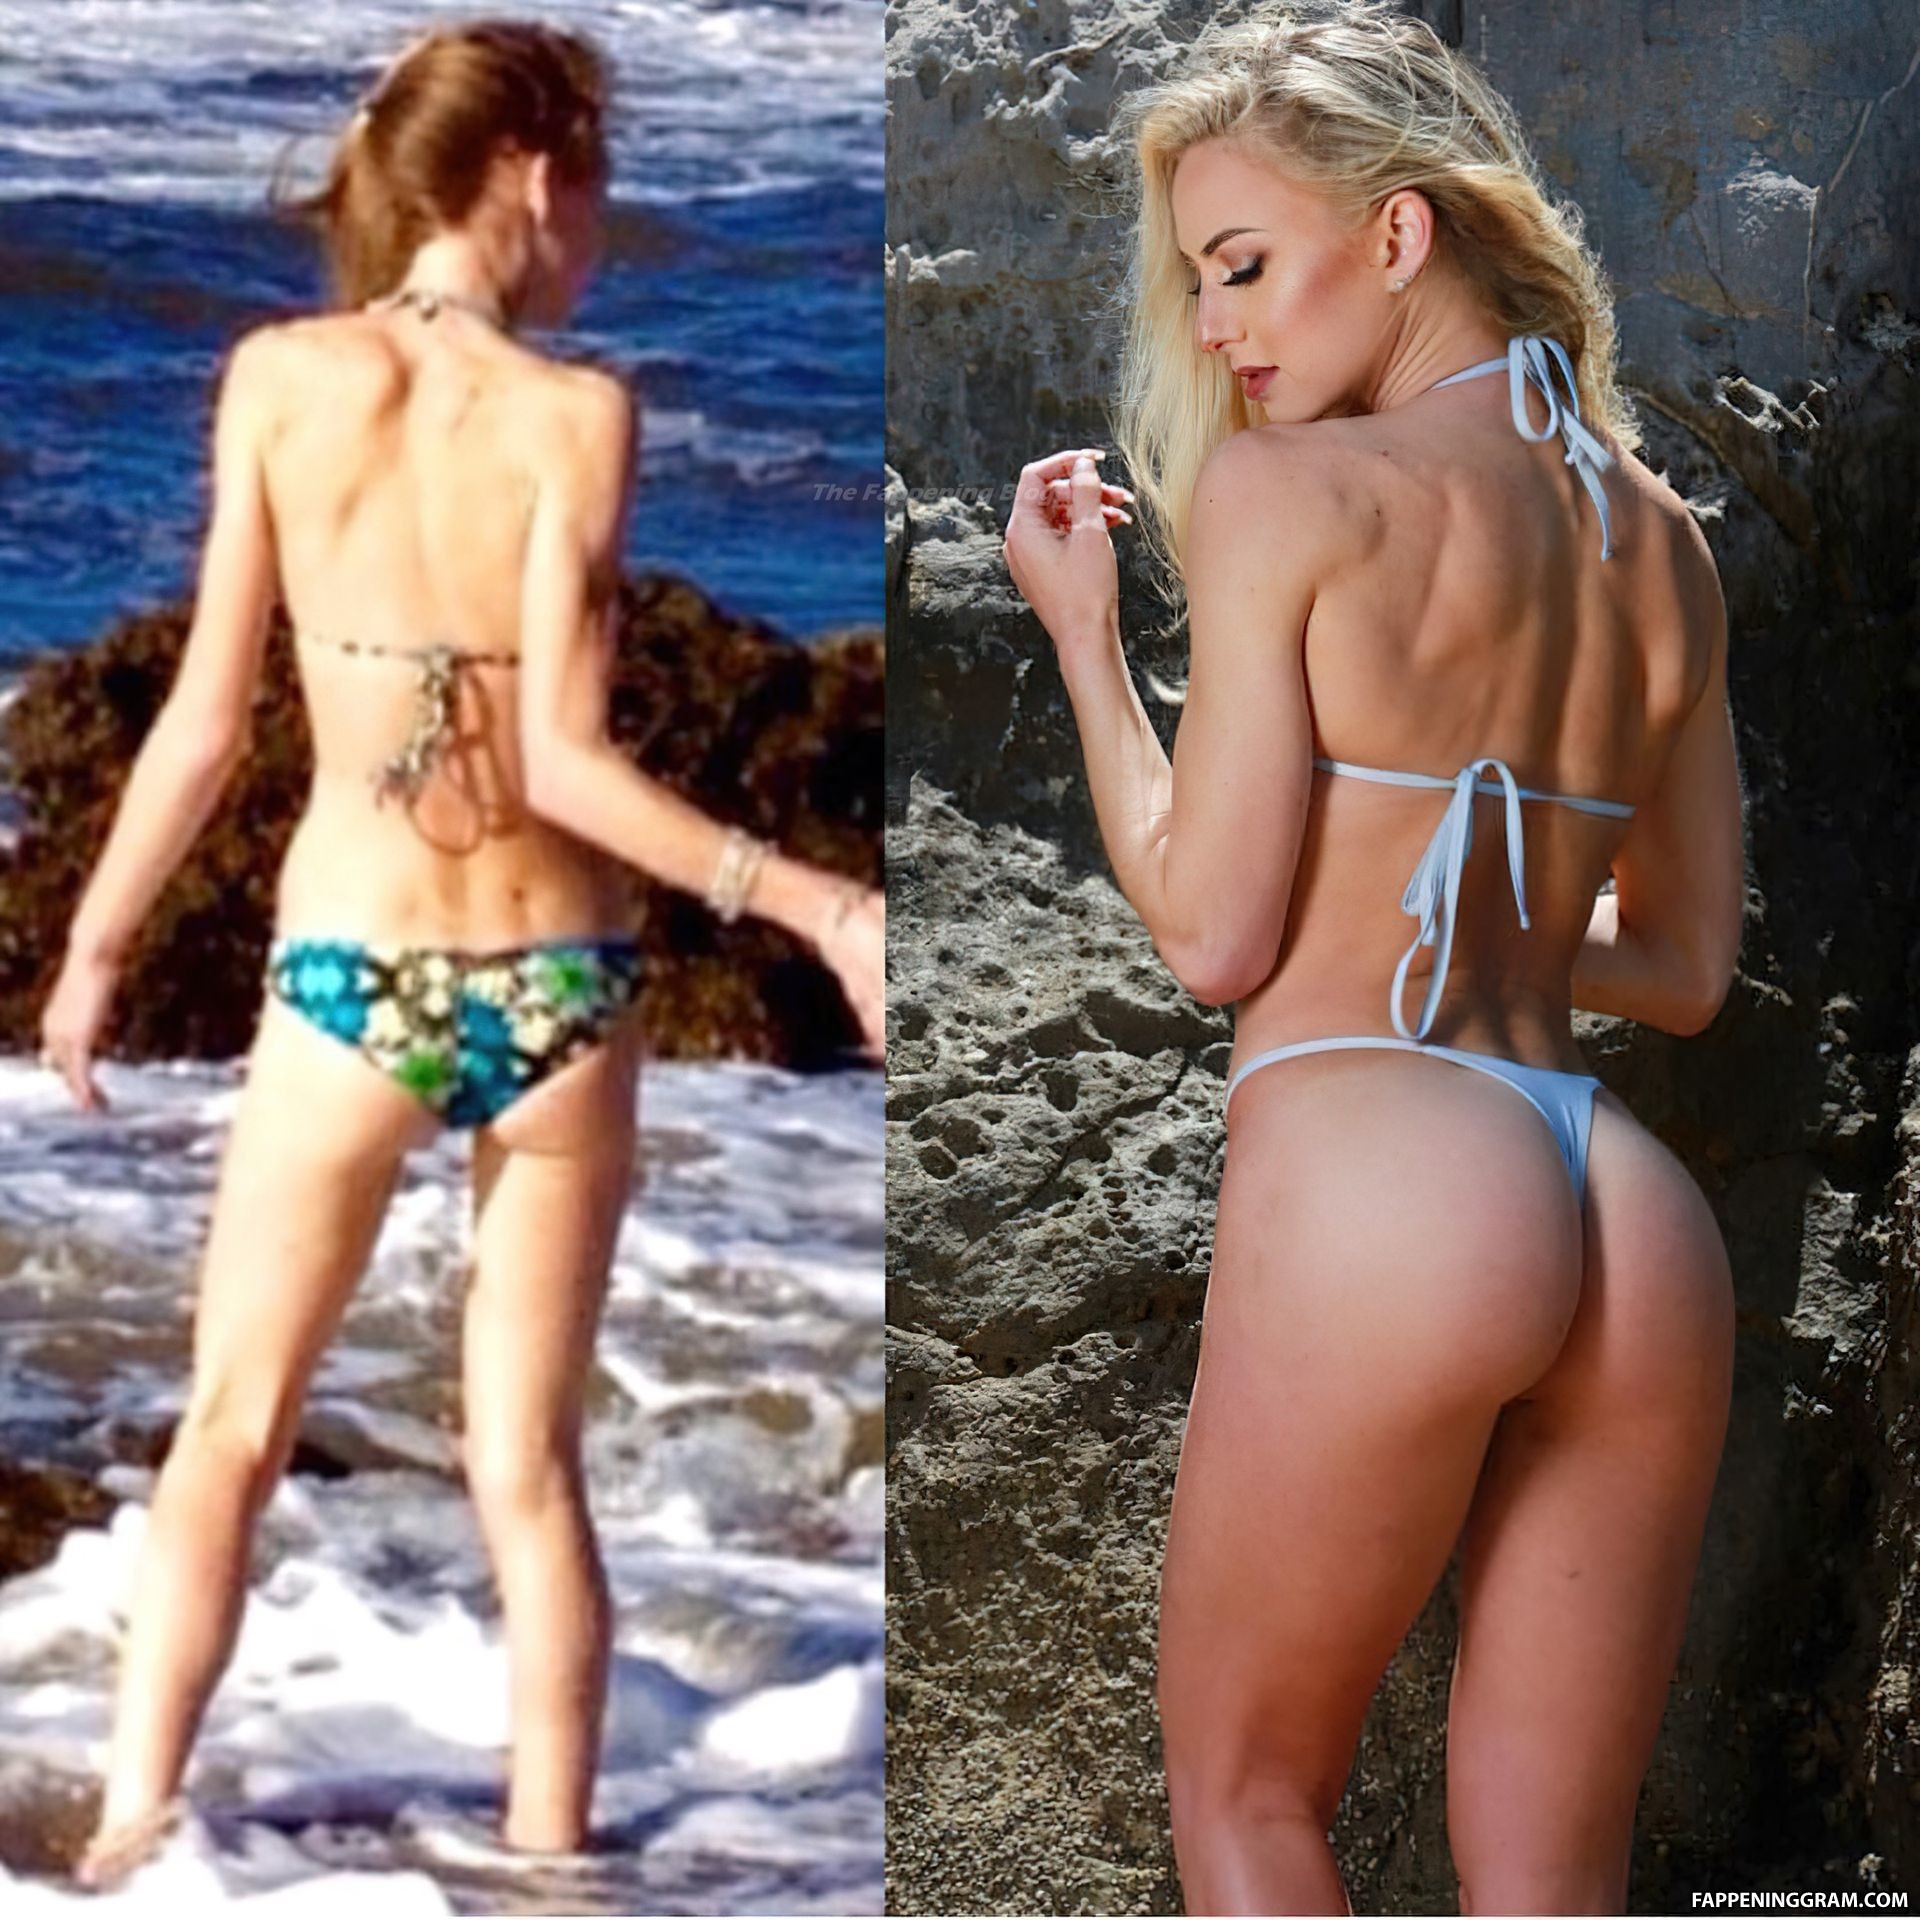 Marissa deegan nude - 🧡 Marisa Papen Naked (20 Photos) #TheFappening.